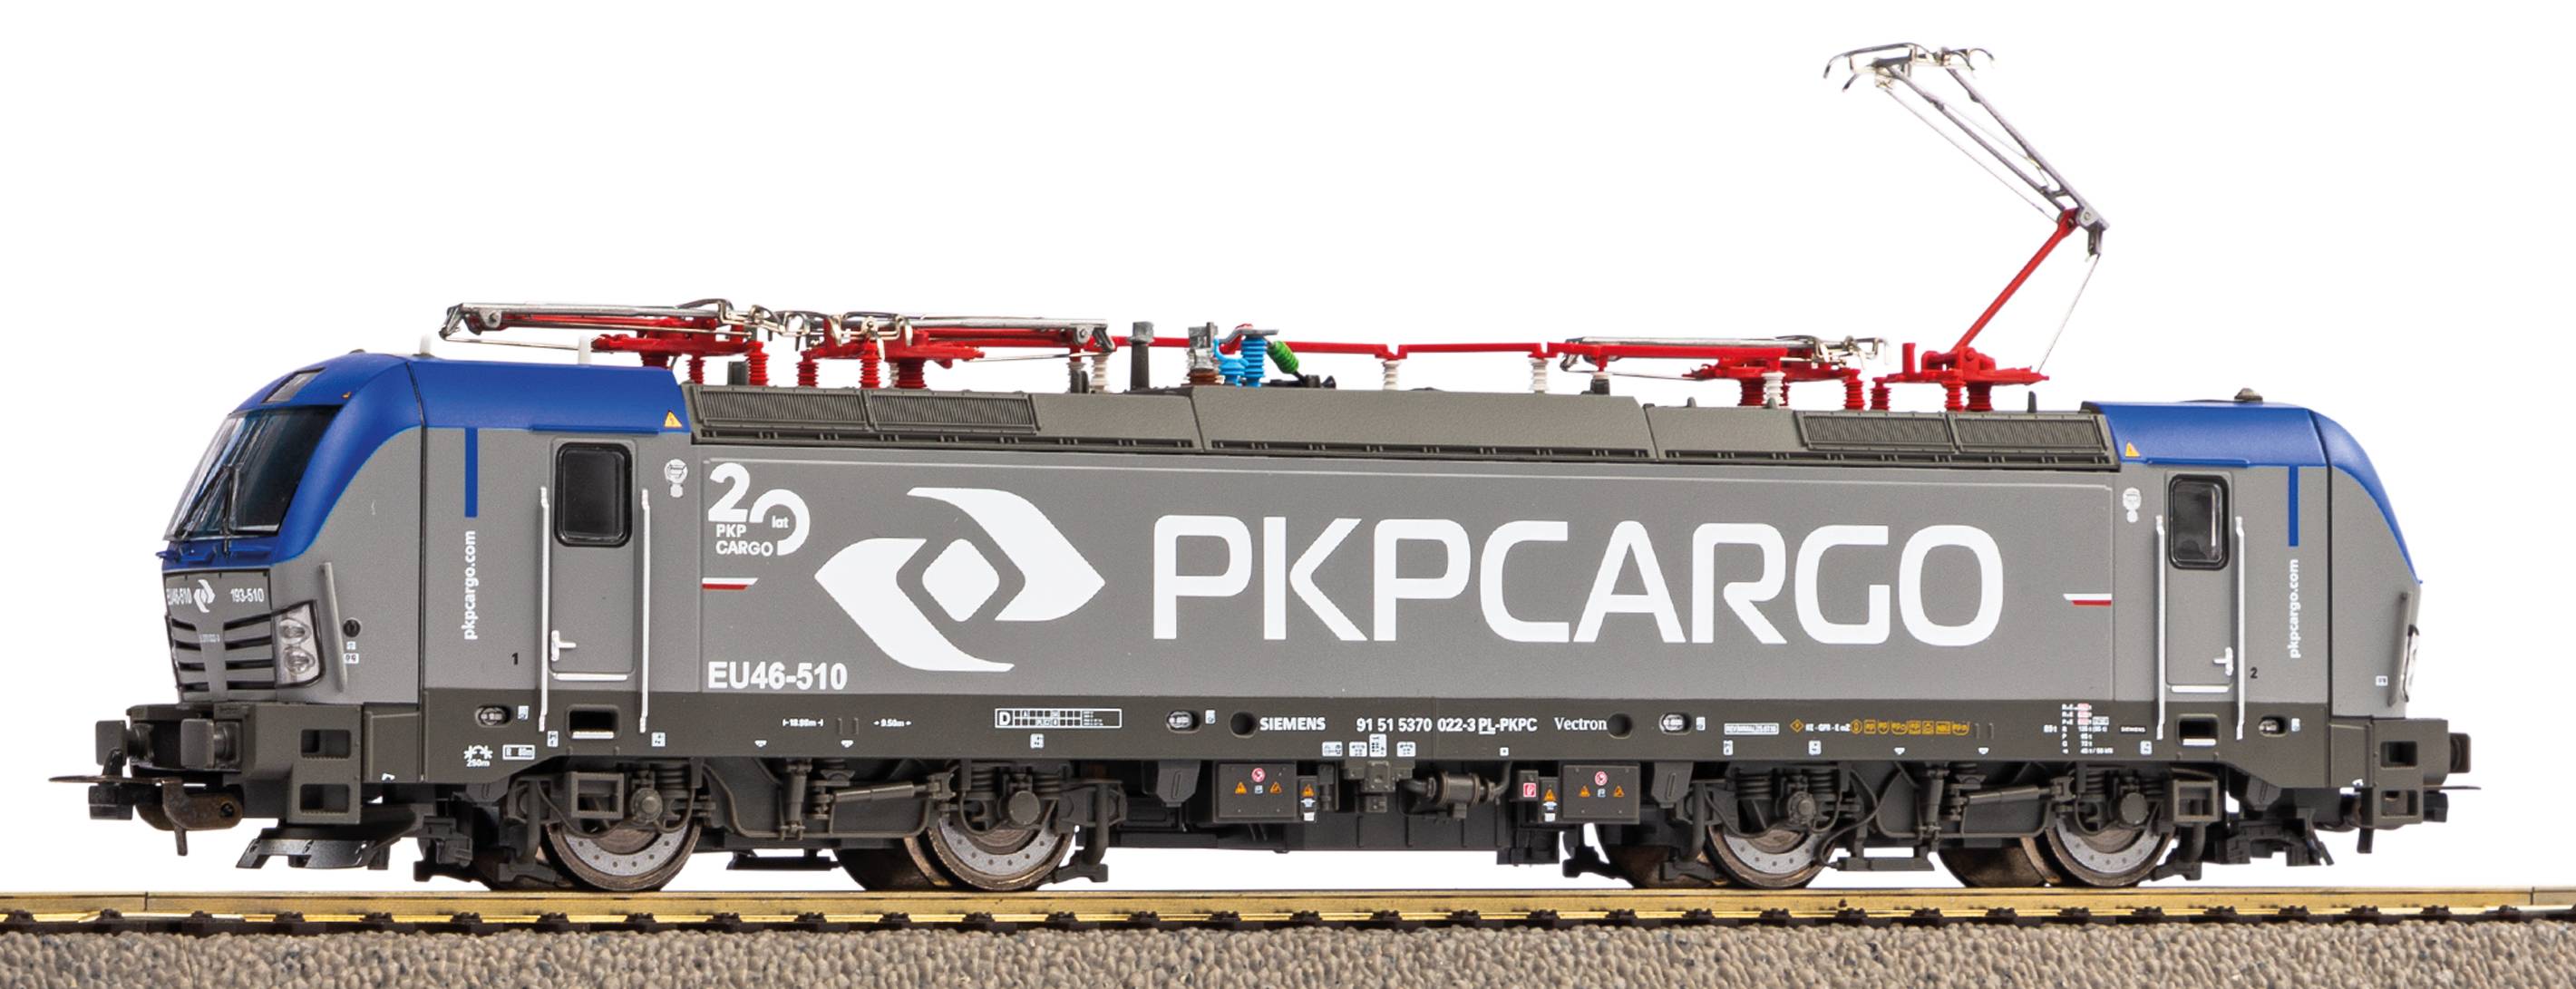 Piko 59593 H0 PKP Cargo elektrische locomotief EU46 Vectron, DC